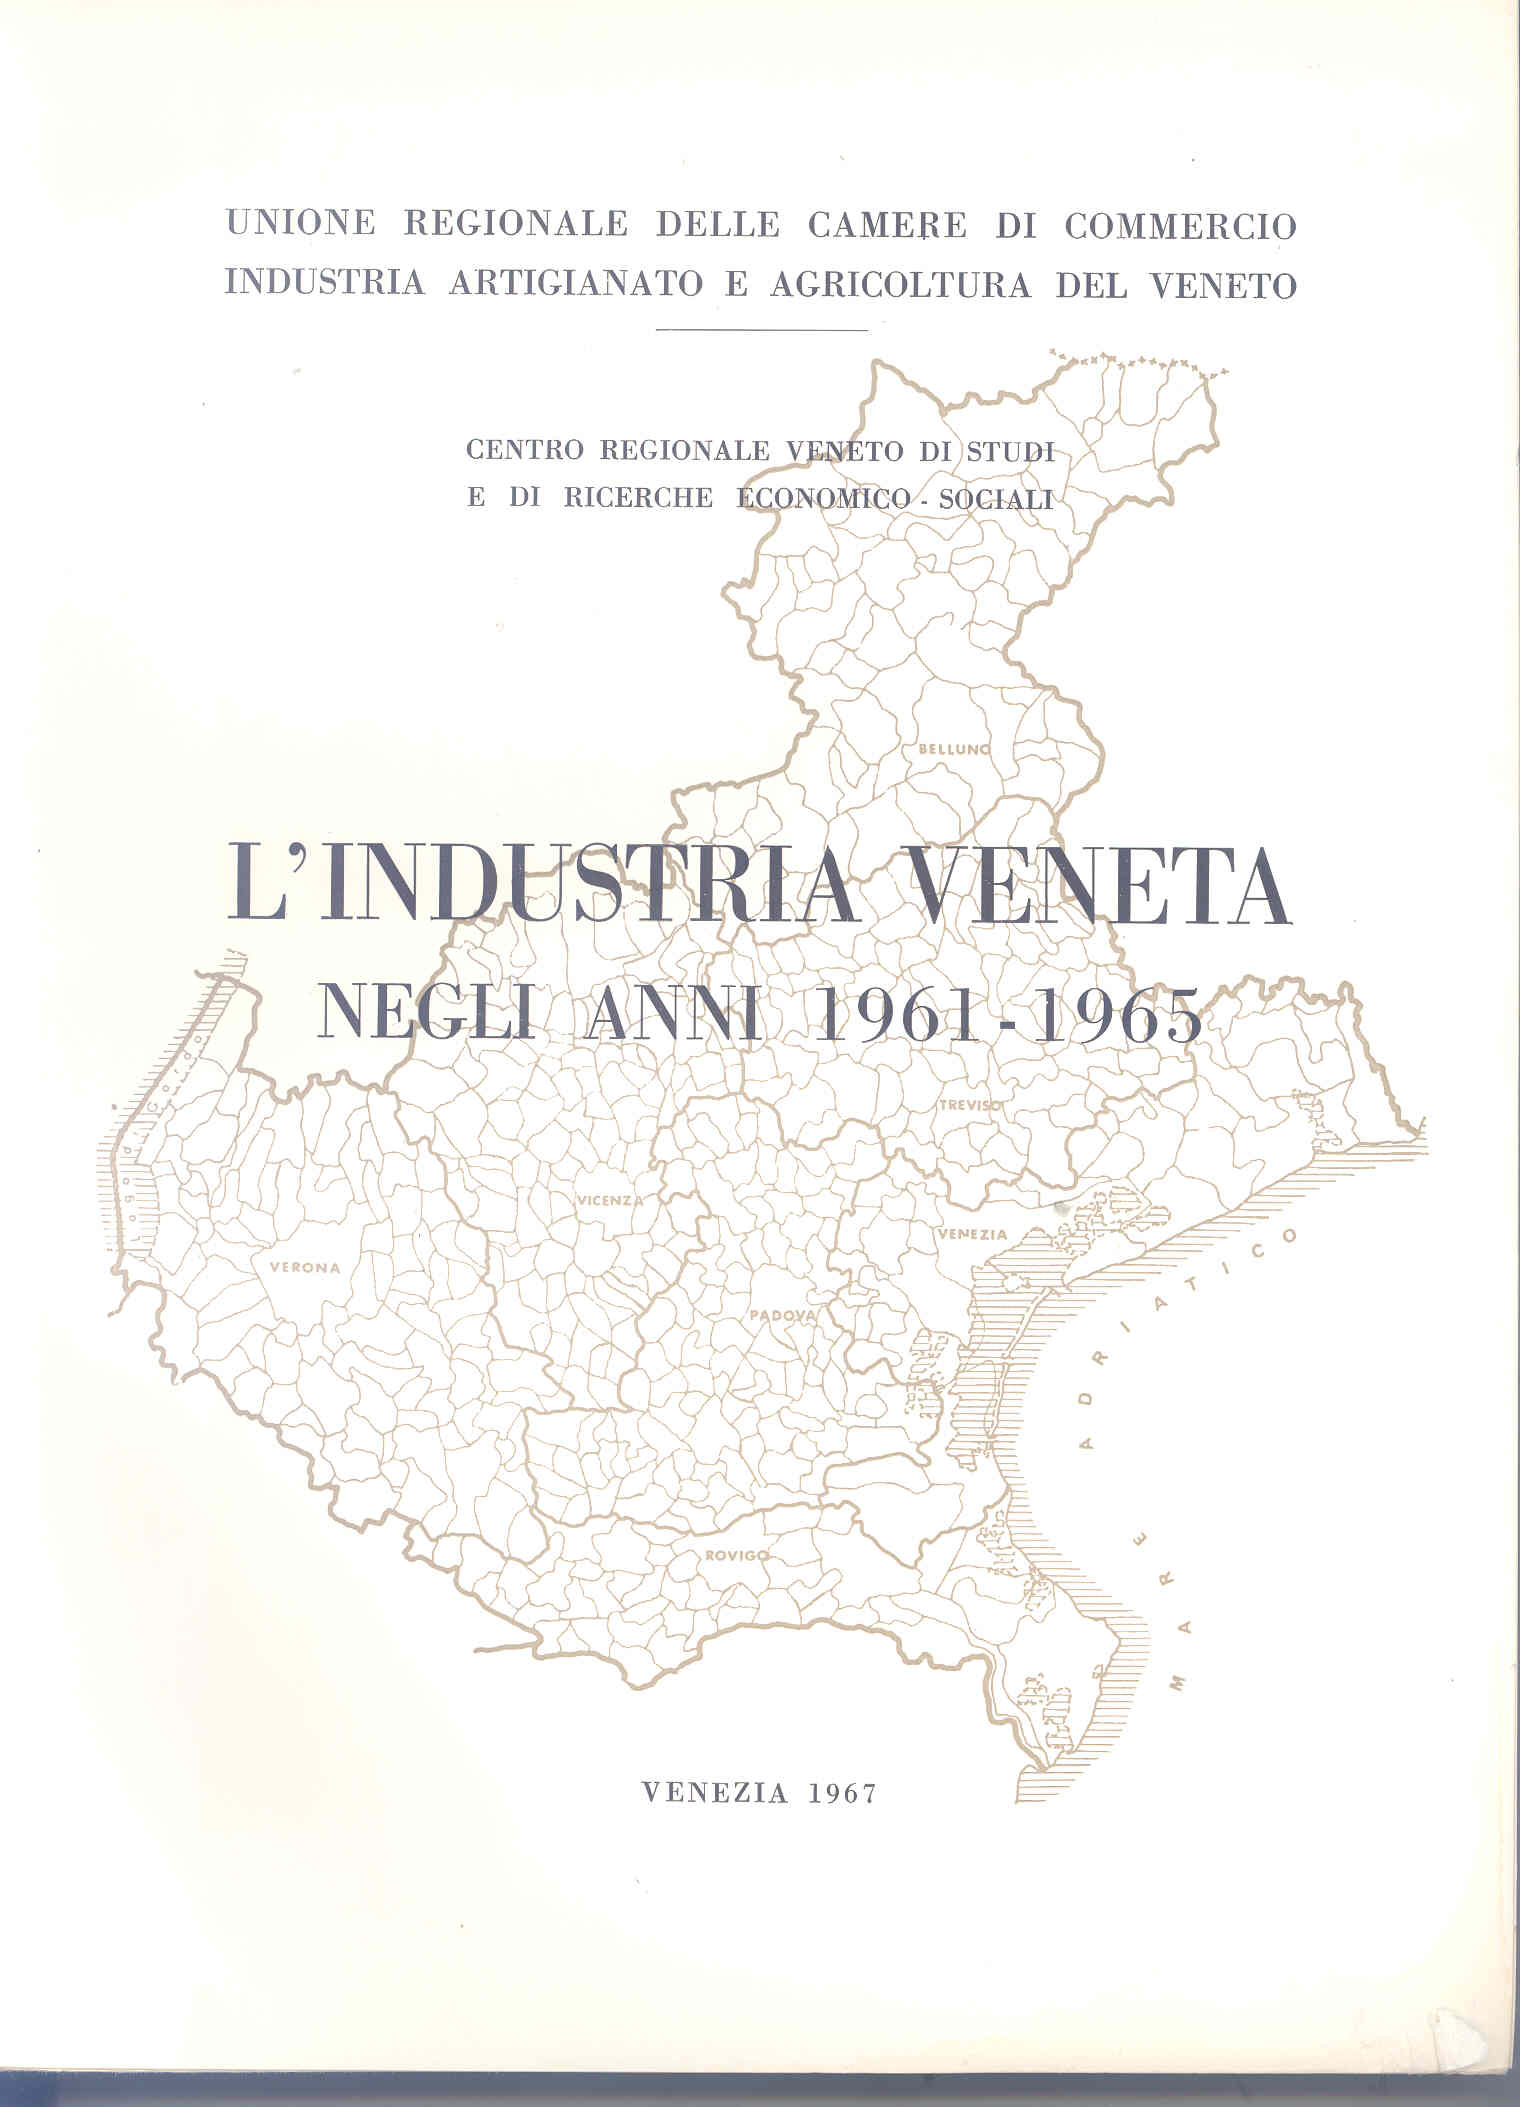 La copertina della prima Relazione sulla situazione economica del Veneto